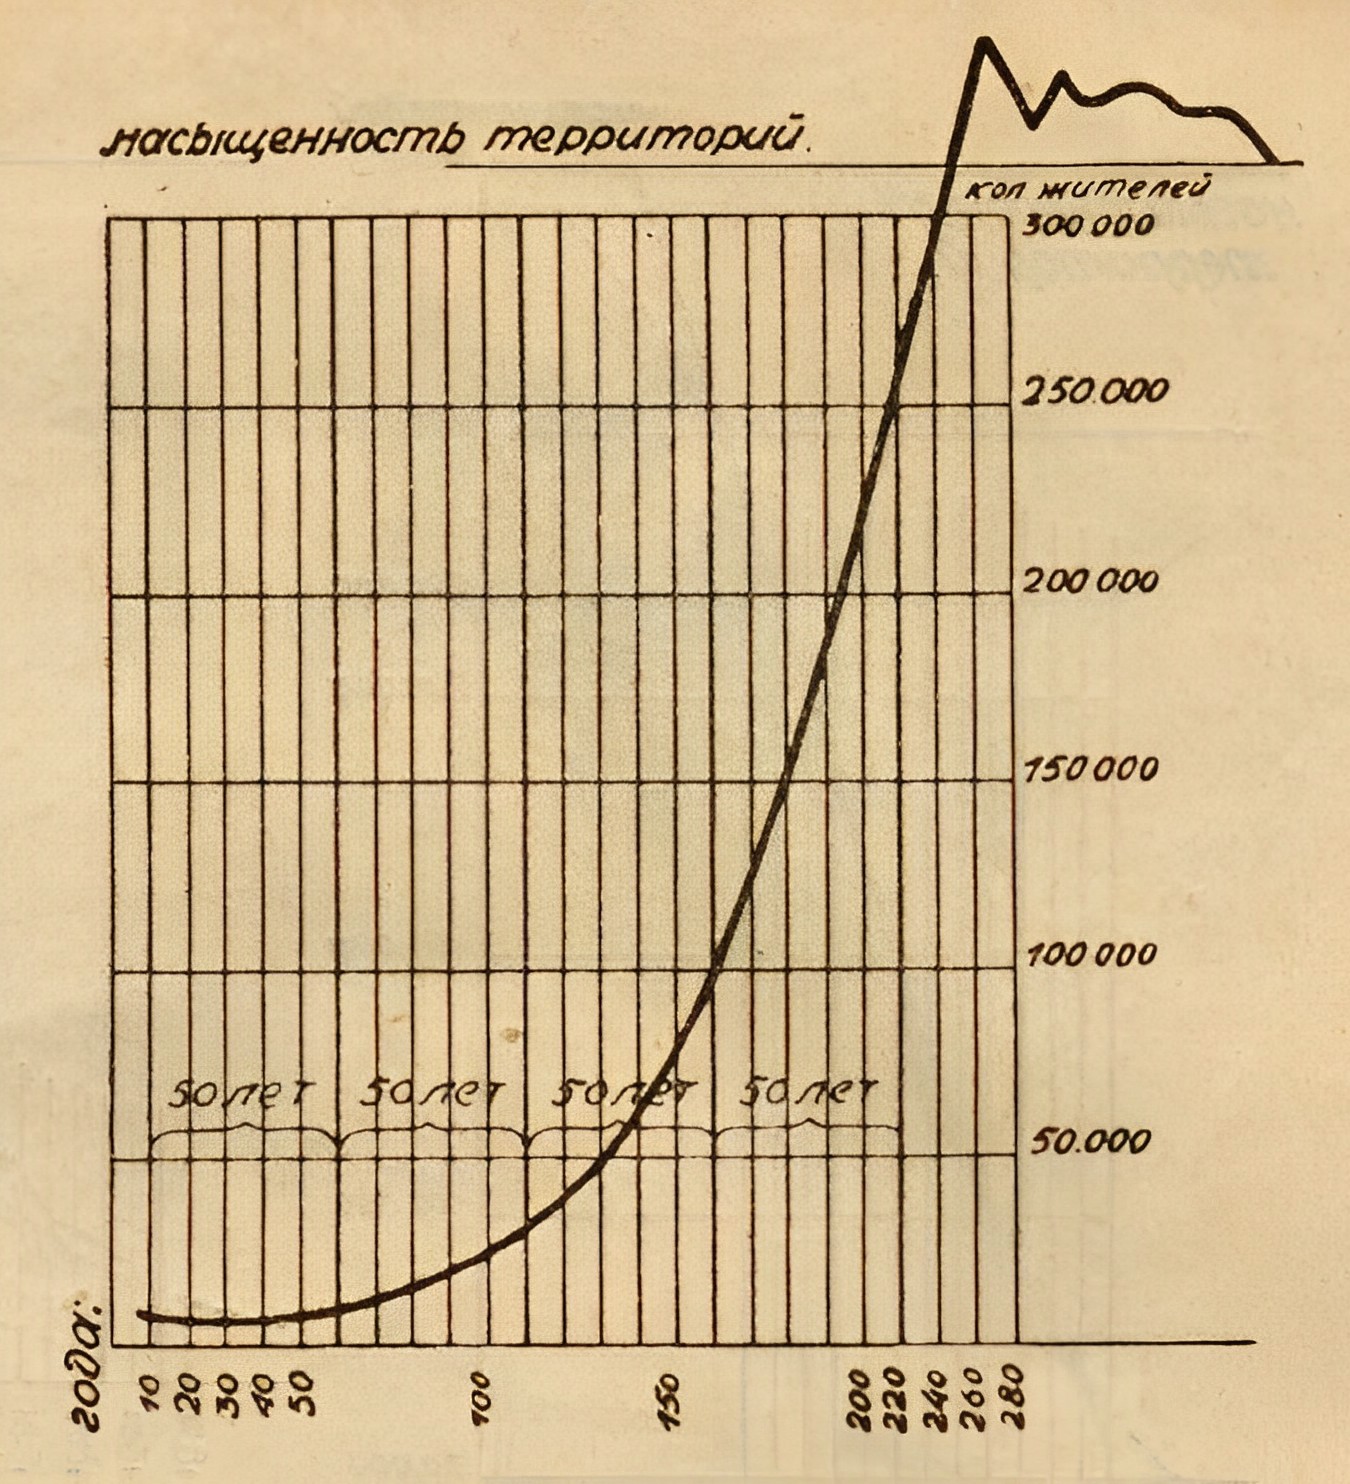 Общая кривая роста населения. На протяжении 50 лет замечается резкое усиление роста.